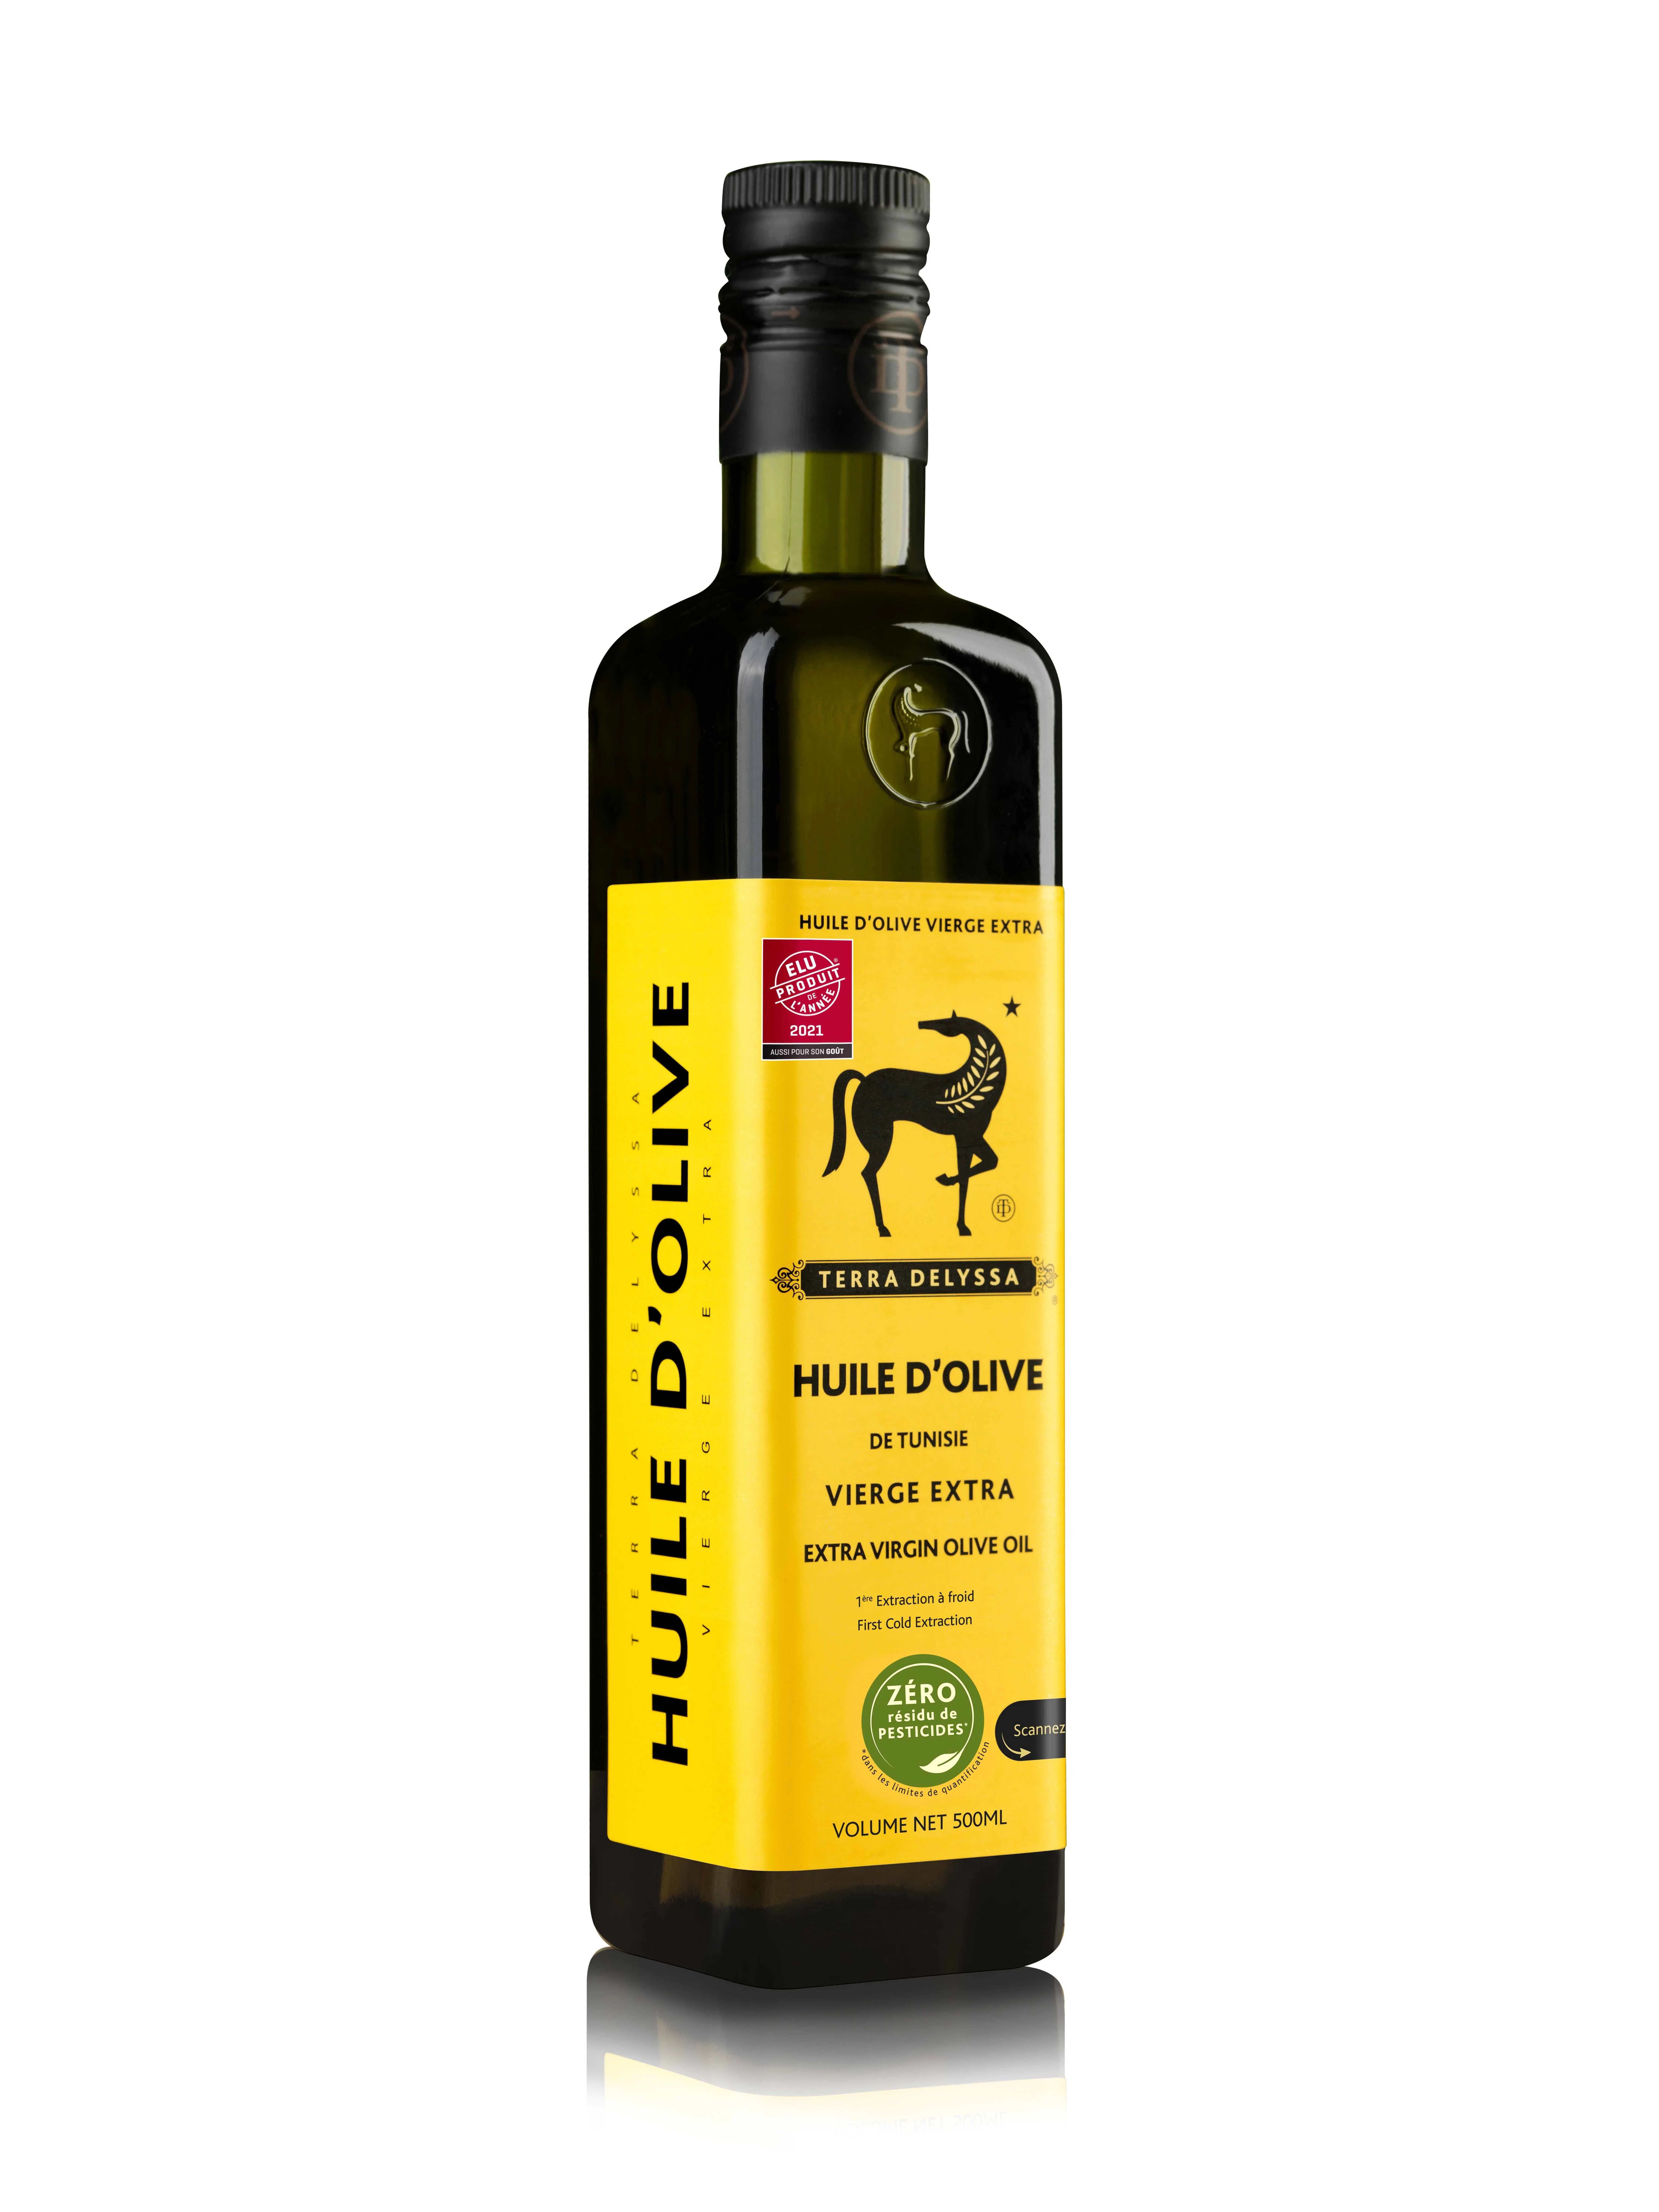 Olio extra vergine di oliva 500ml - TERRA DELYSSA